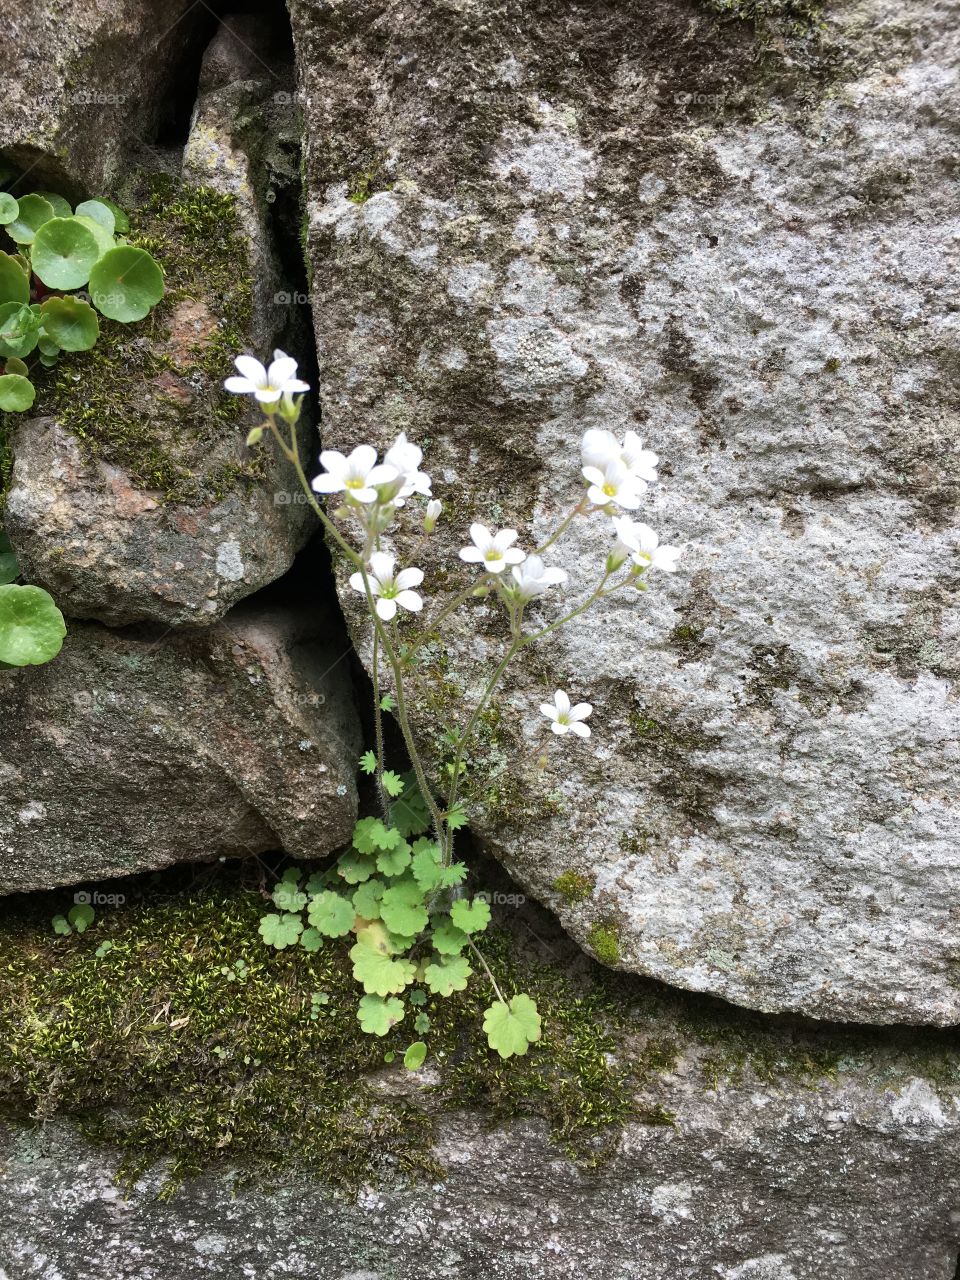 Wildflowers growing in between rocks